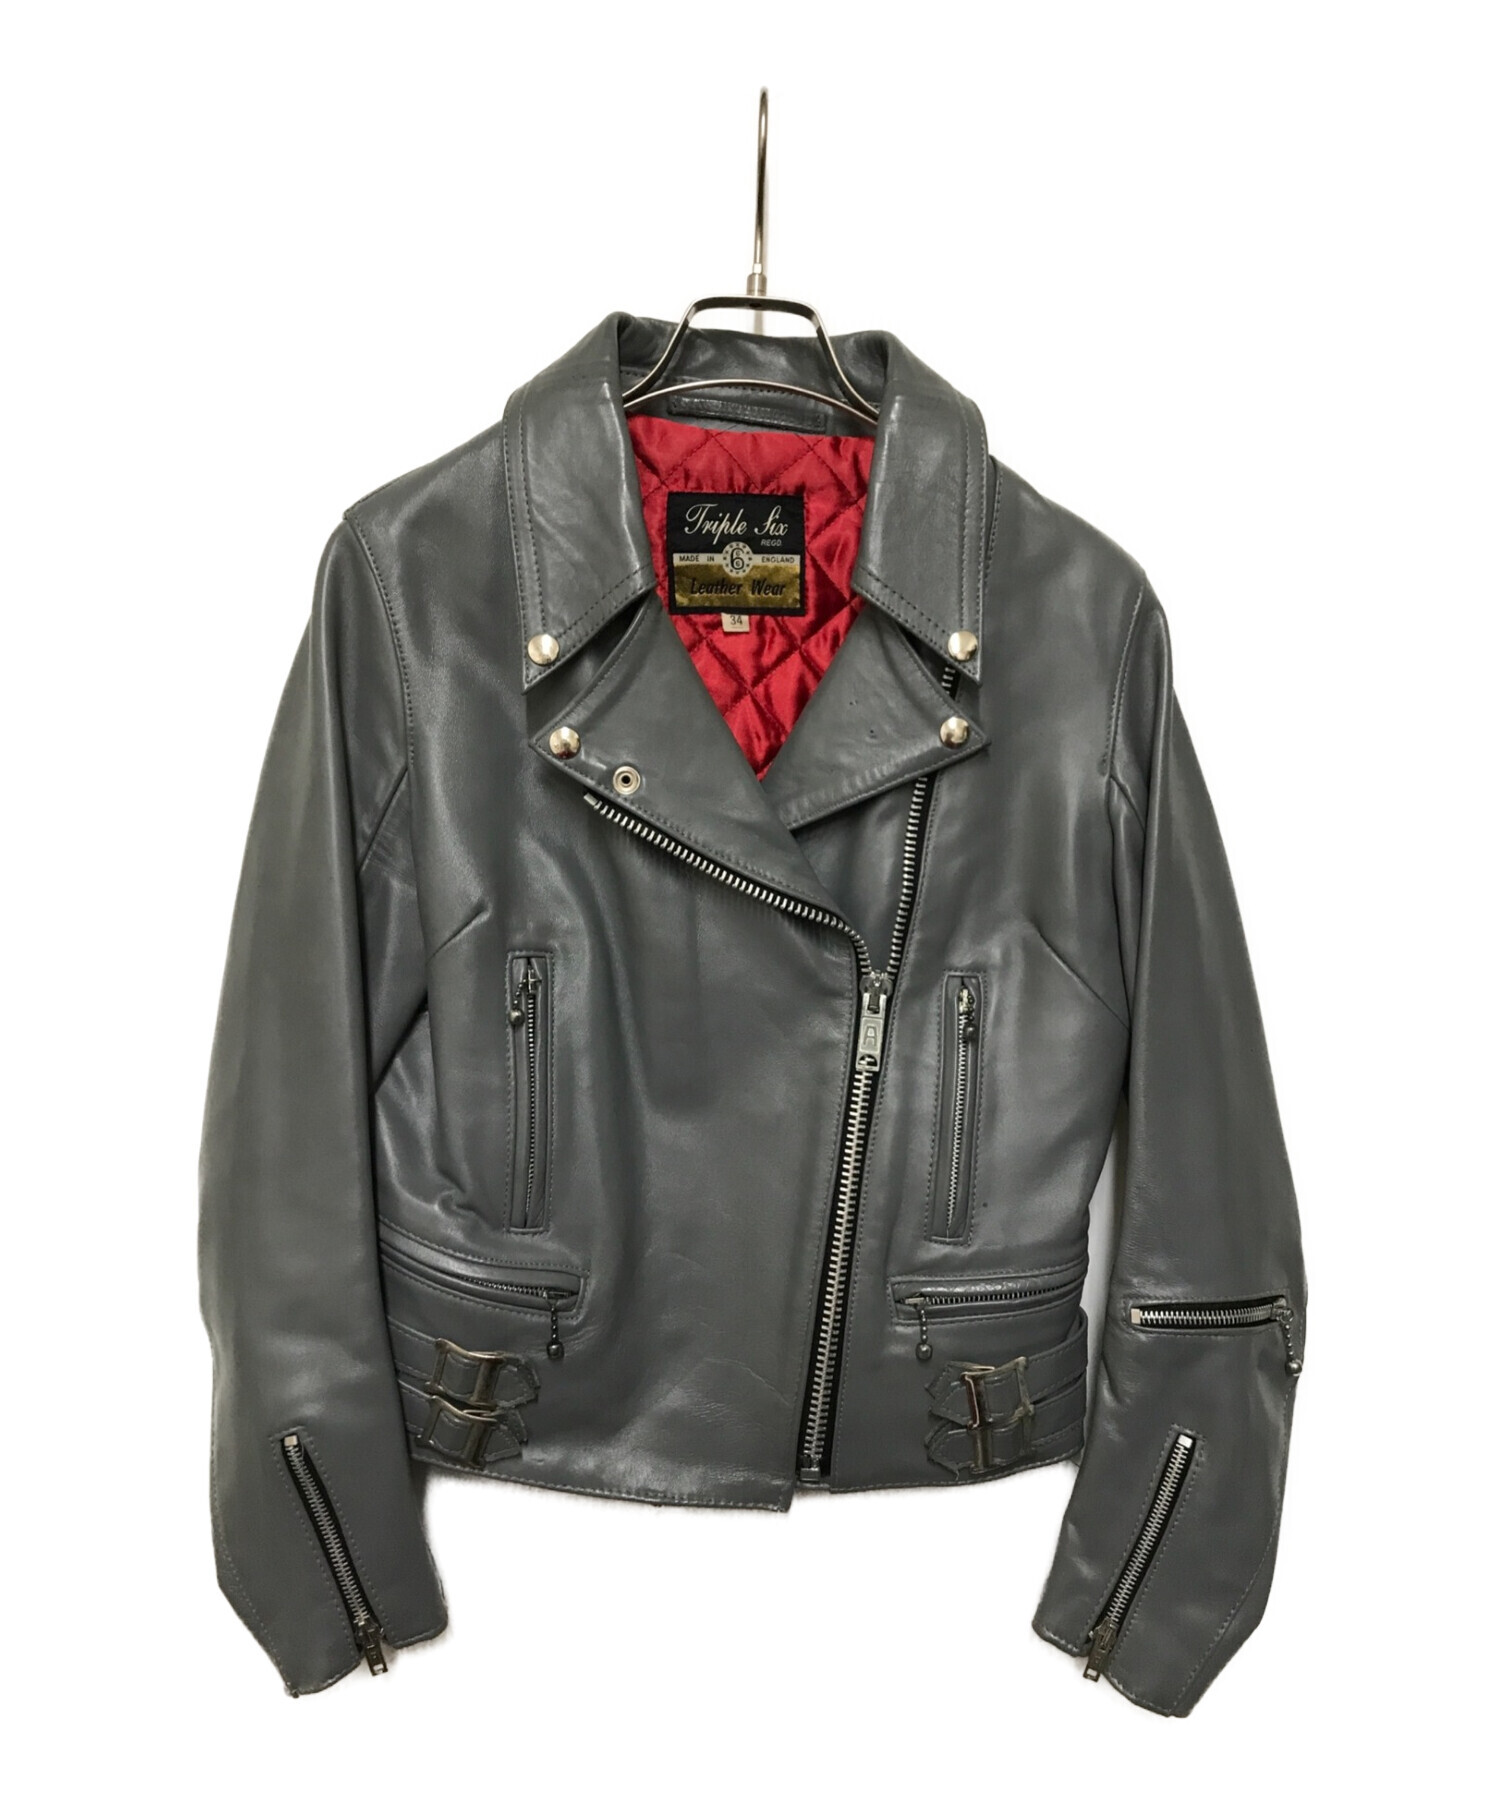 666 leather jacket